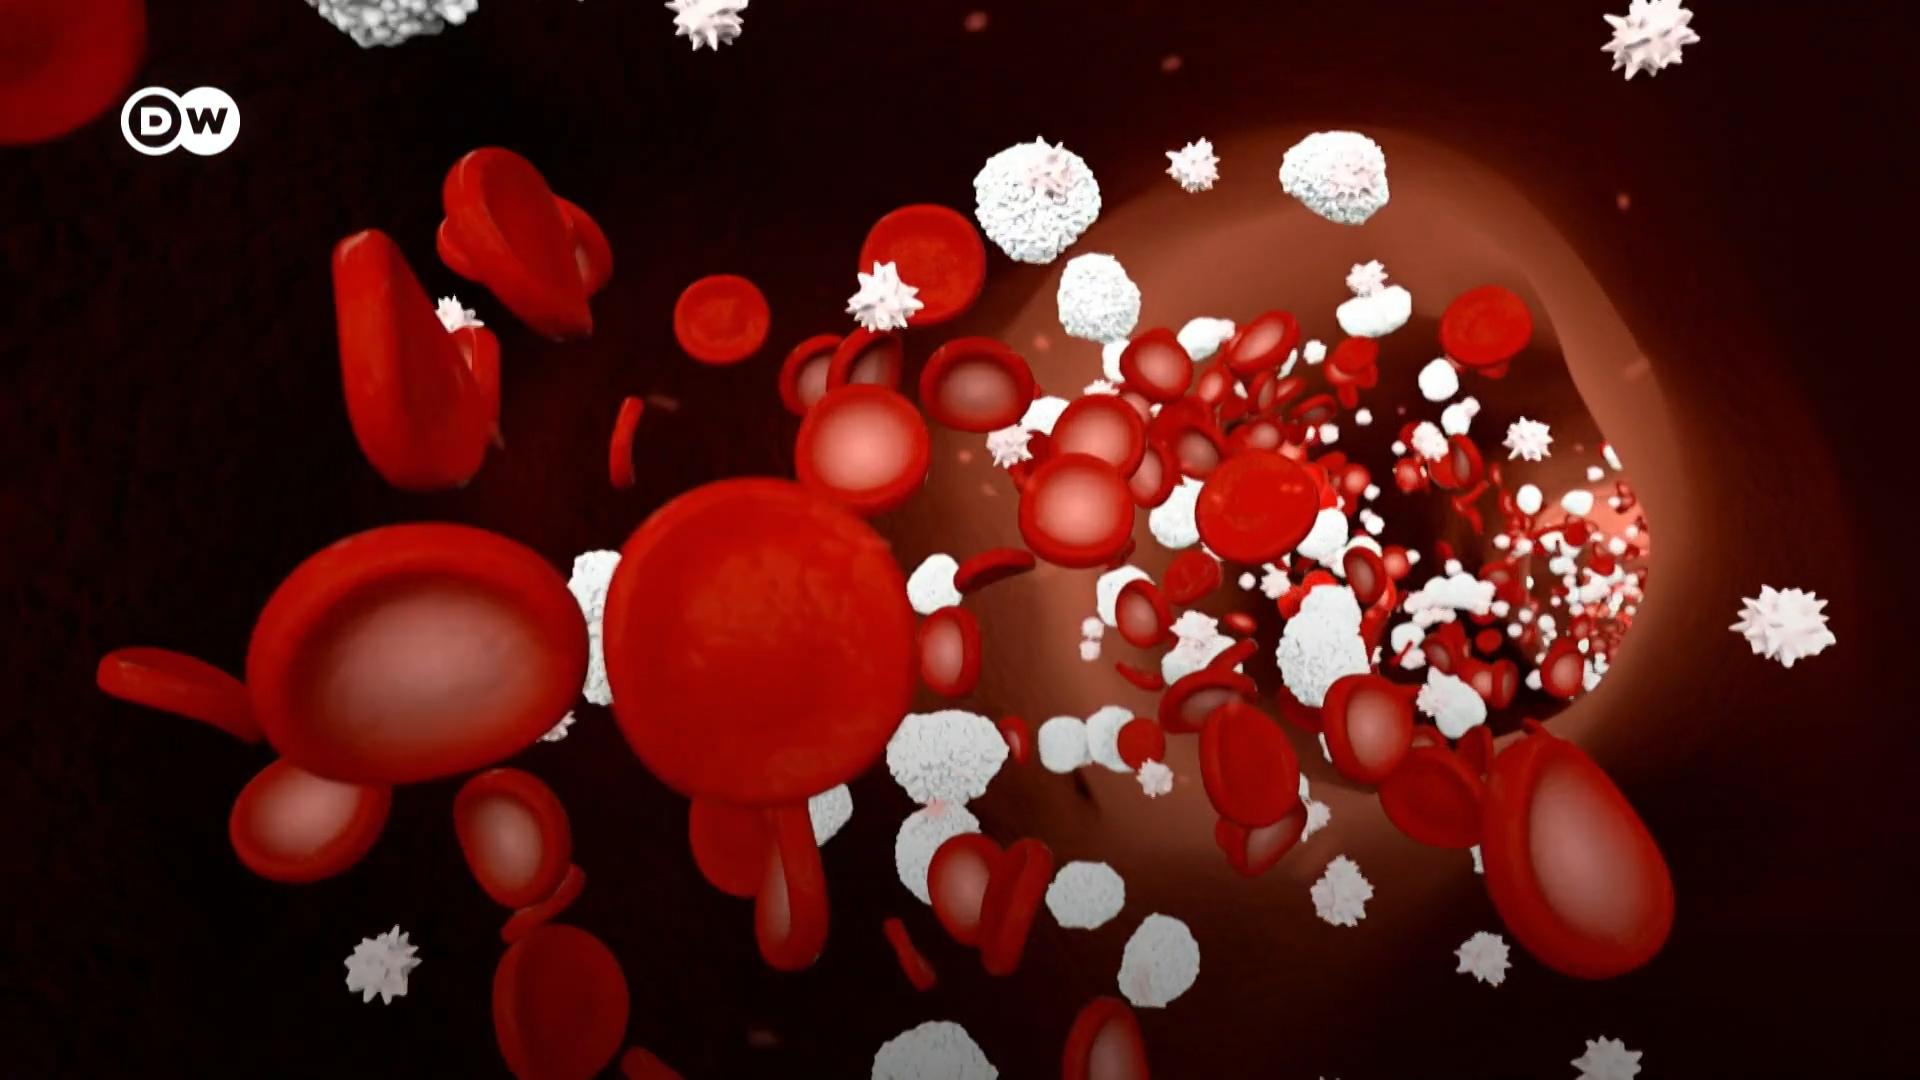 血液也称作液体器官，它向人体输送氧气，帮助排除二氧化碳。很多血液细胞仅存活数天，不停地新陈代谢。
